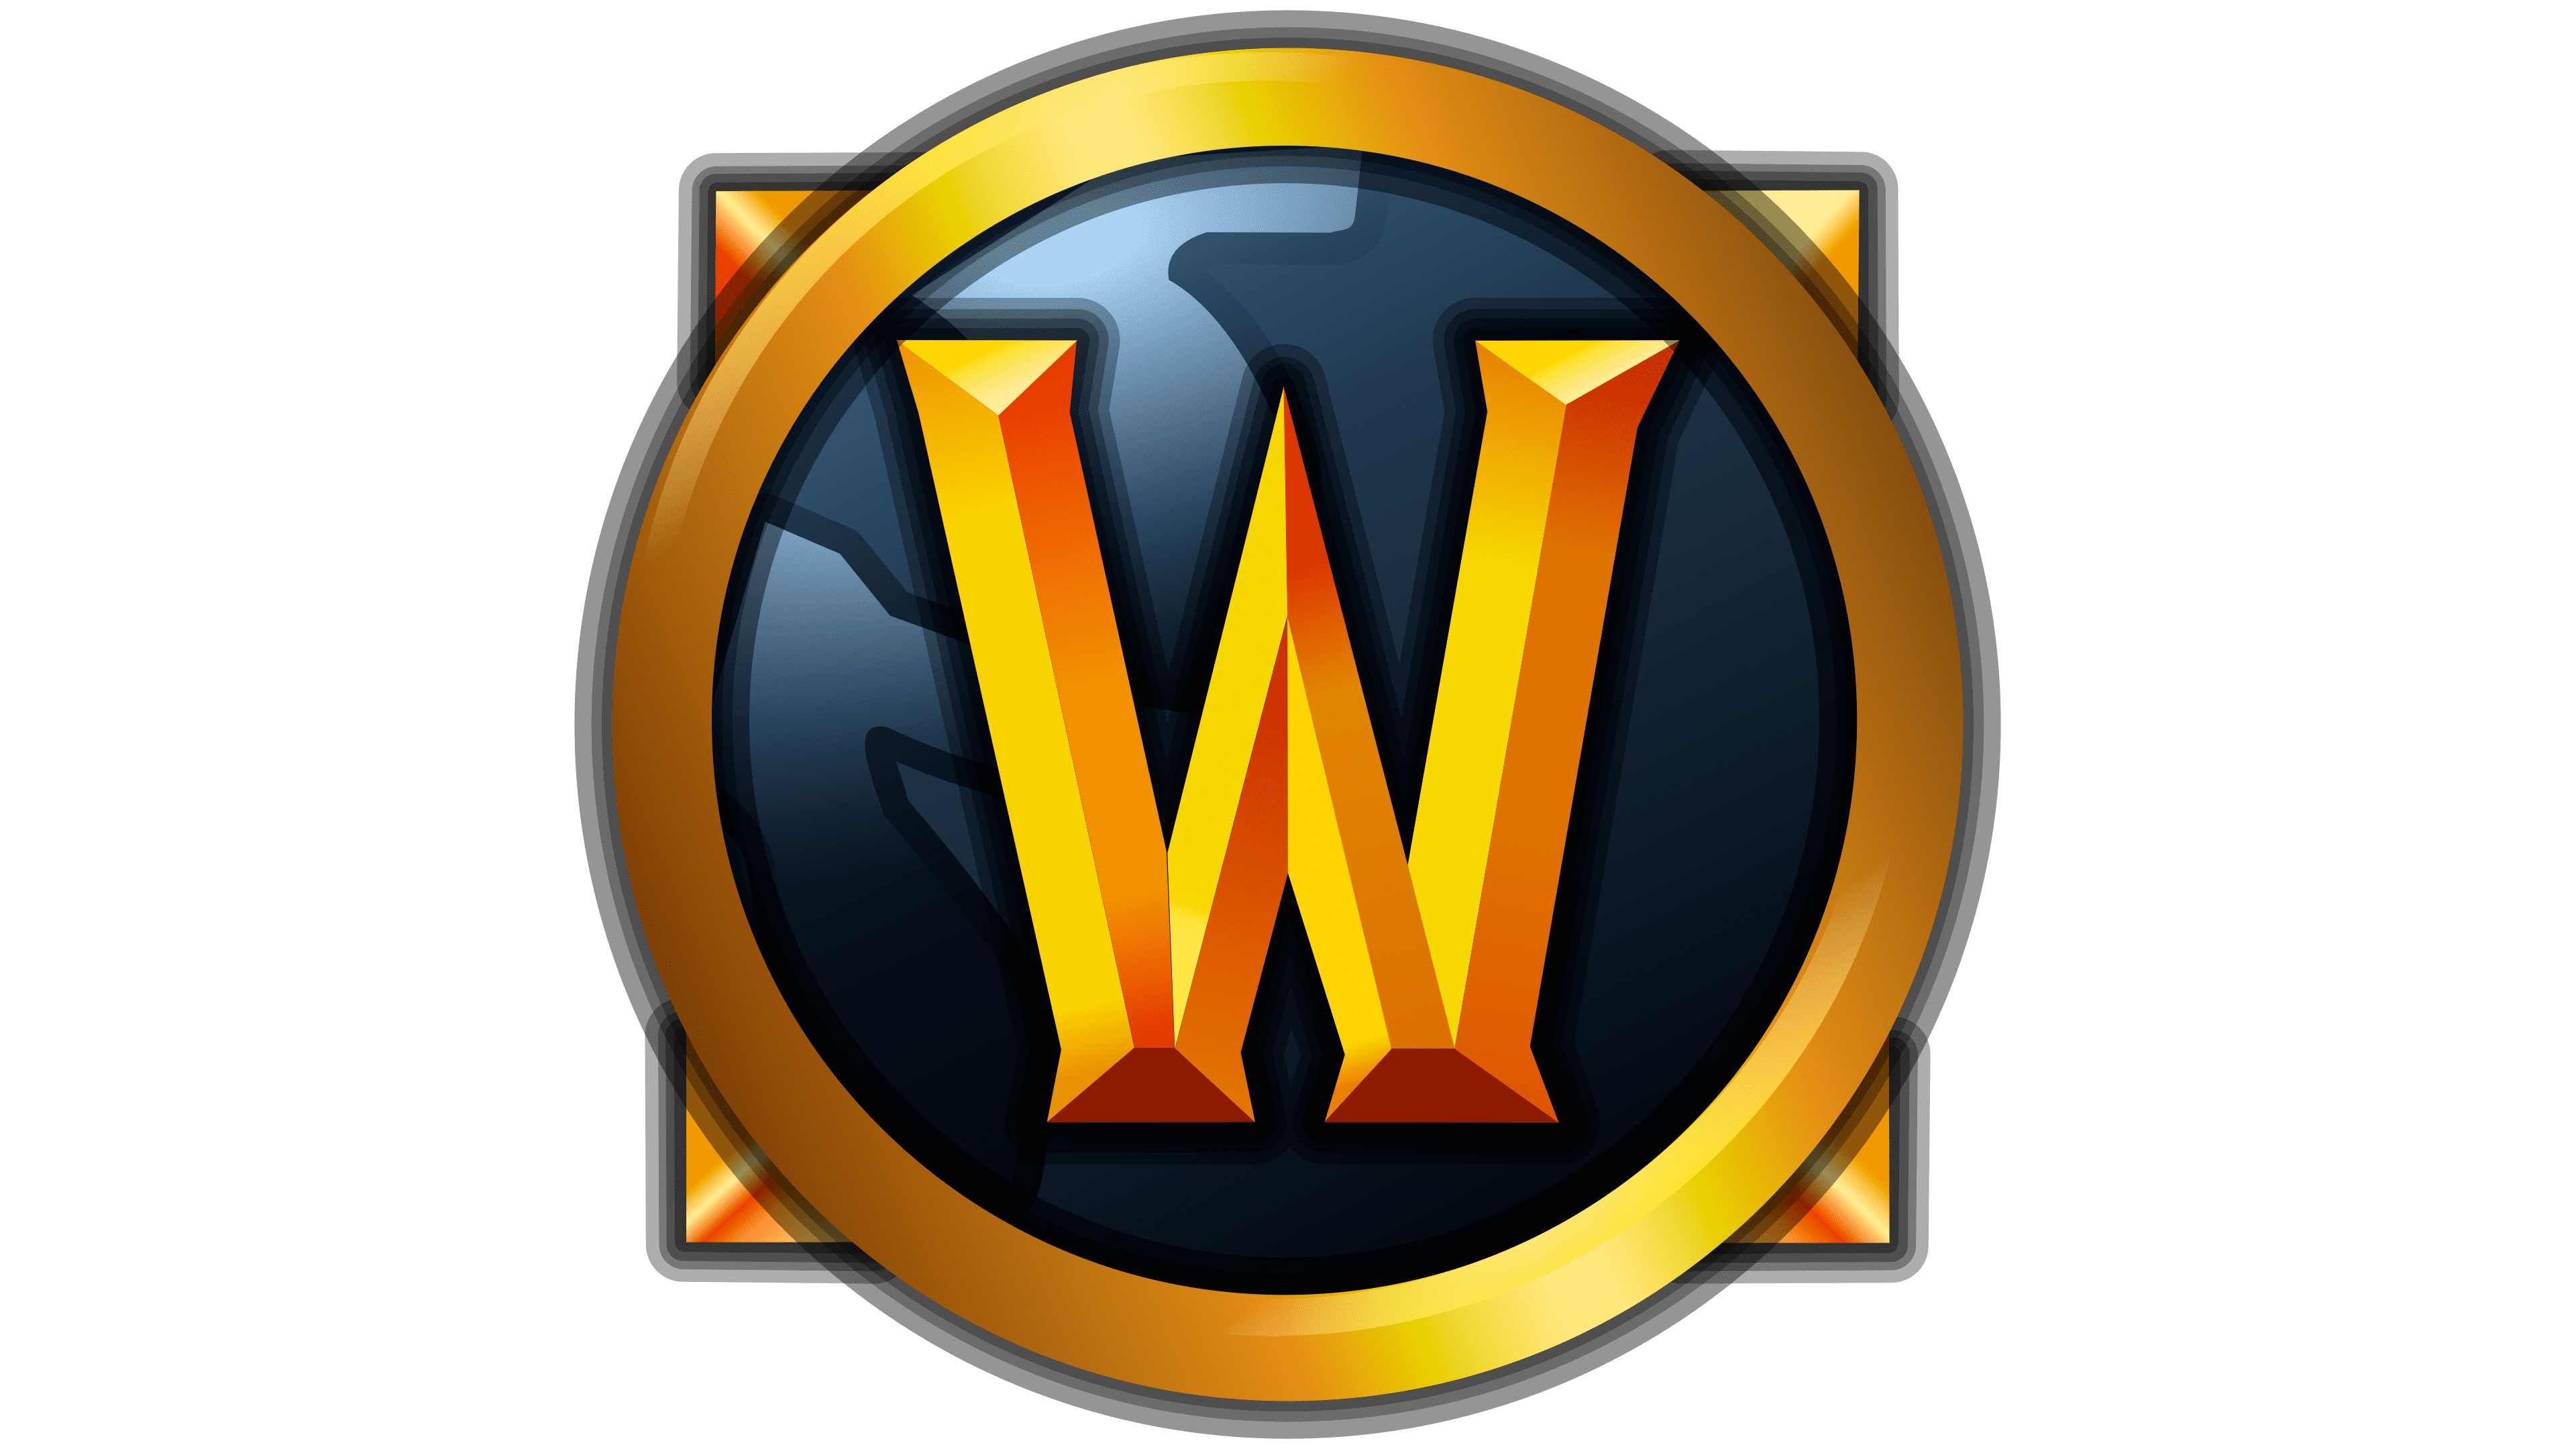 Warcraft icons. Wow лого. World of Warcraft иконка. Иконки игр. Эмблемы игр компьютерных.